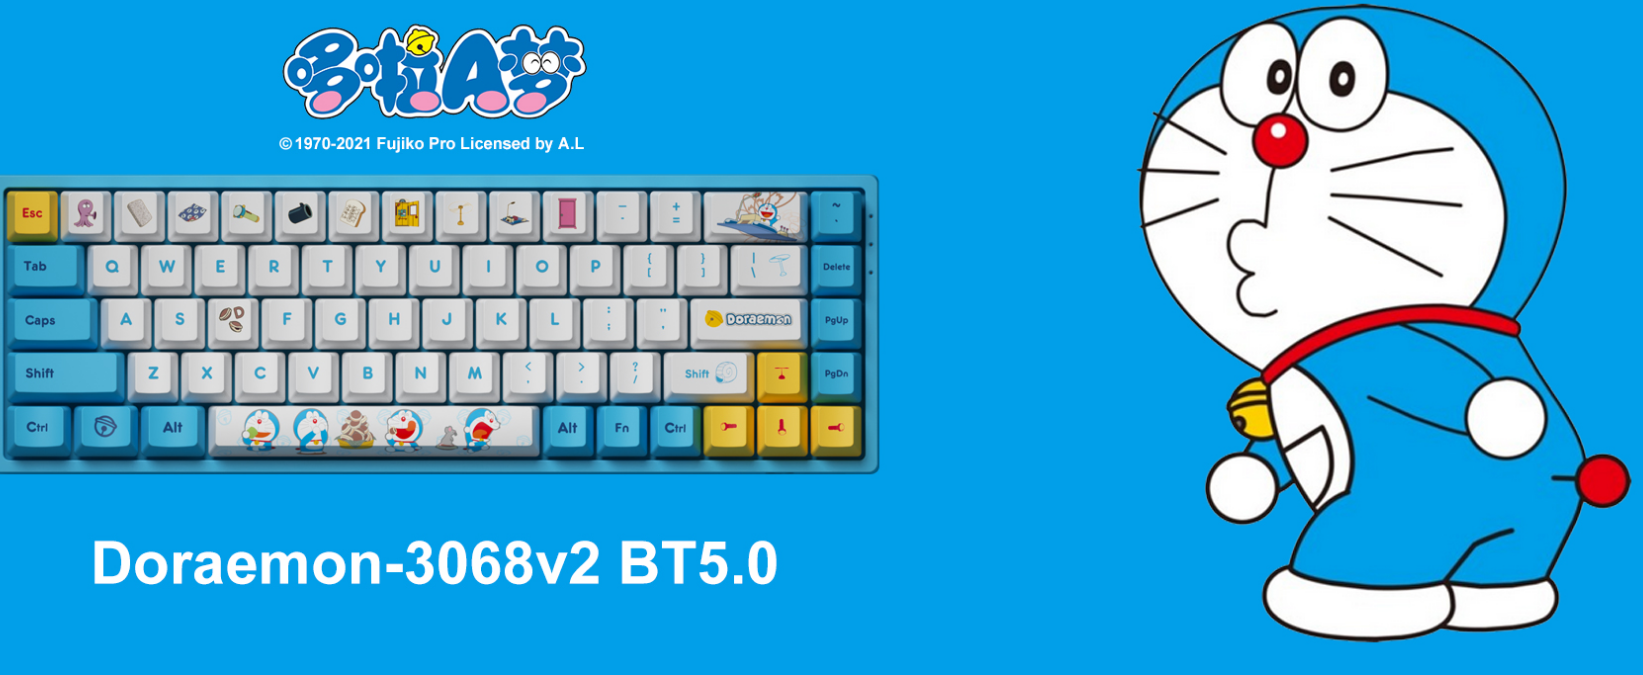 Sử dụng bàn phím Doraemon gaming keyboard để trải nghiệm trò chơi vui vẻ hơn với thiết kế độc đáo và chất lượng cao!